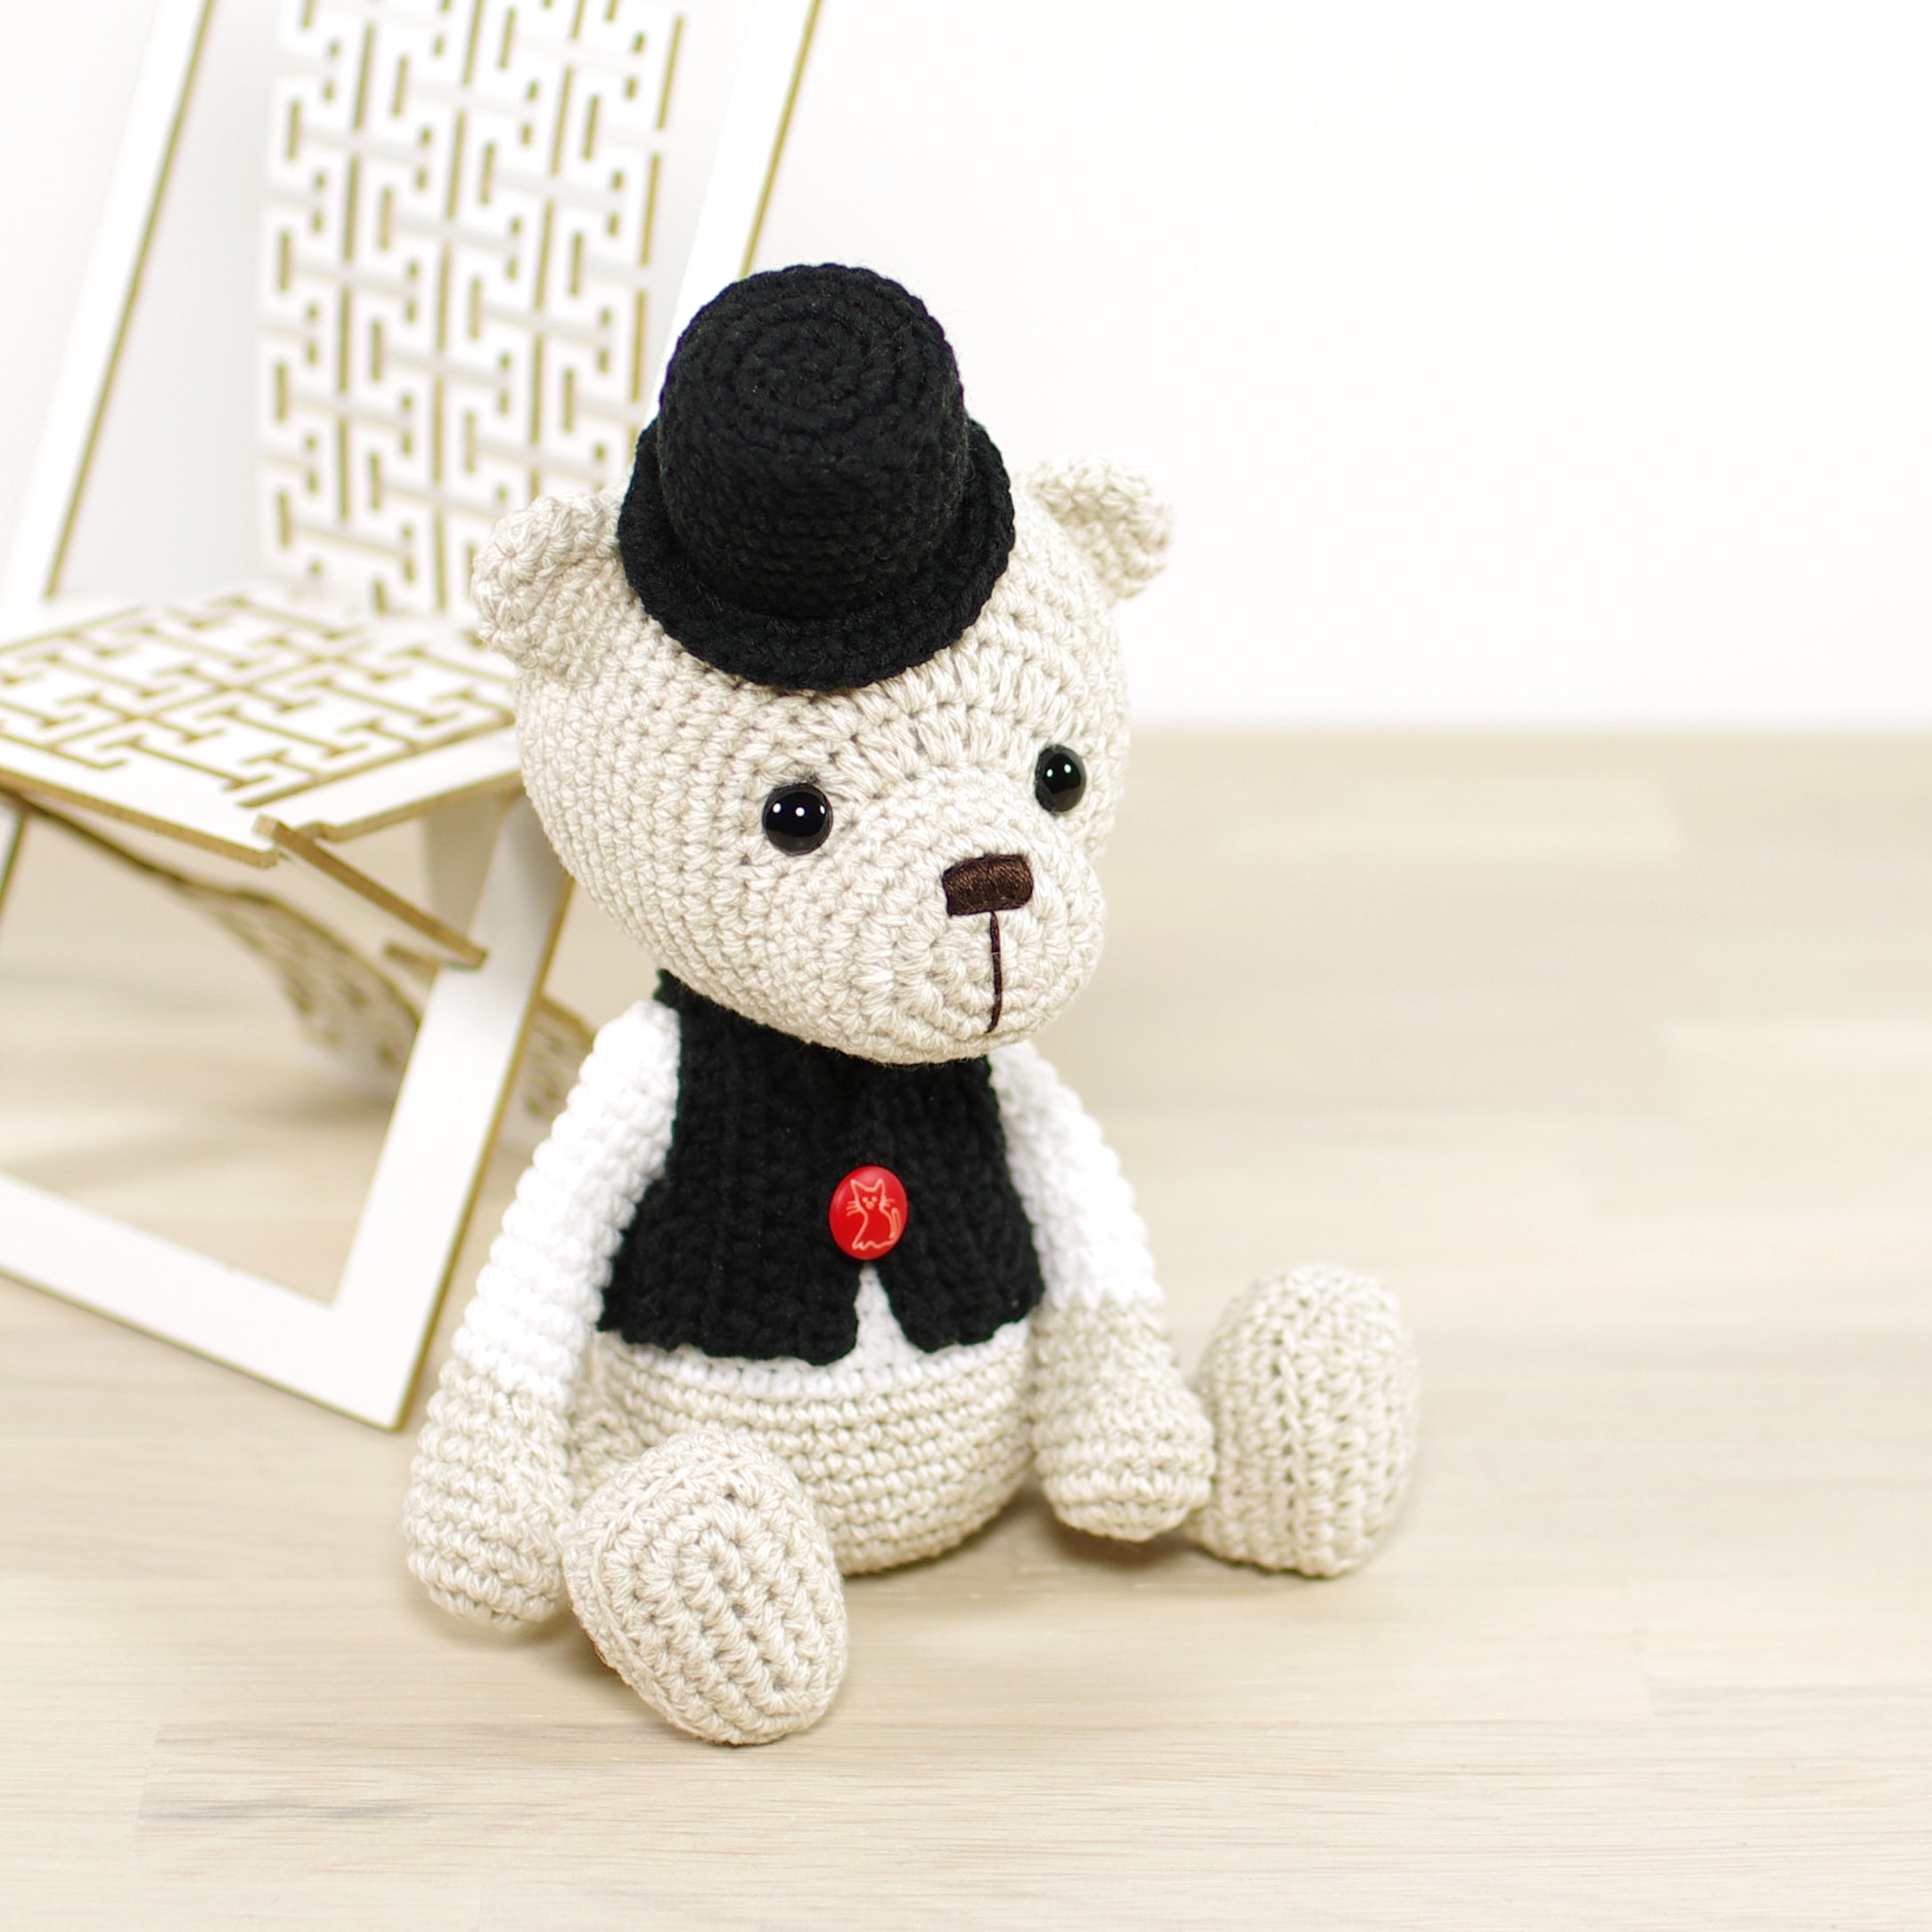 PATTERN: Little Teddy Bear in a Stripy Sweater – Kristi Tullus